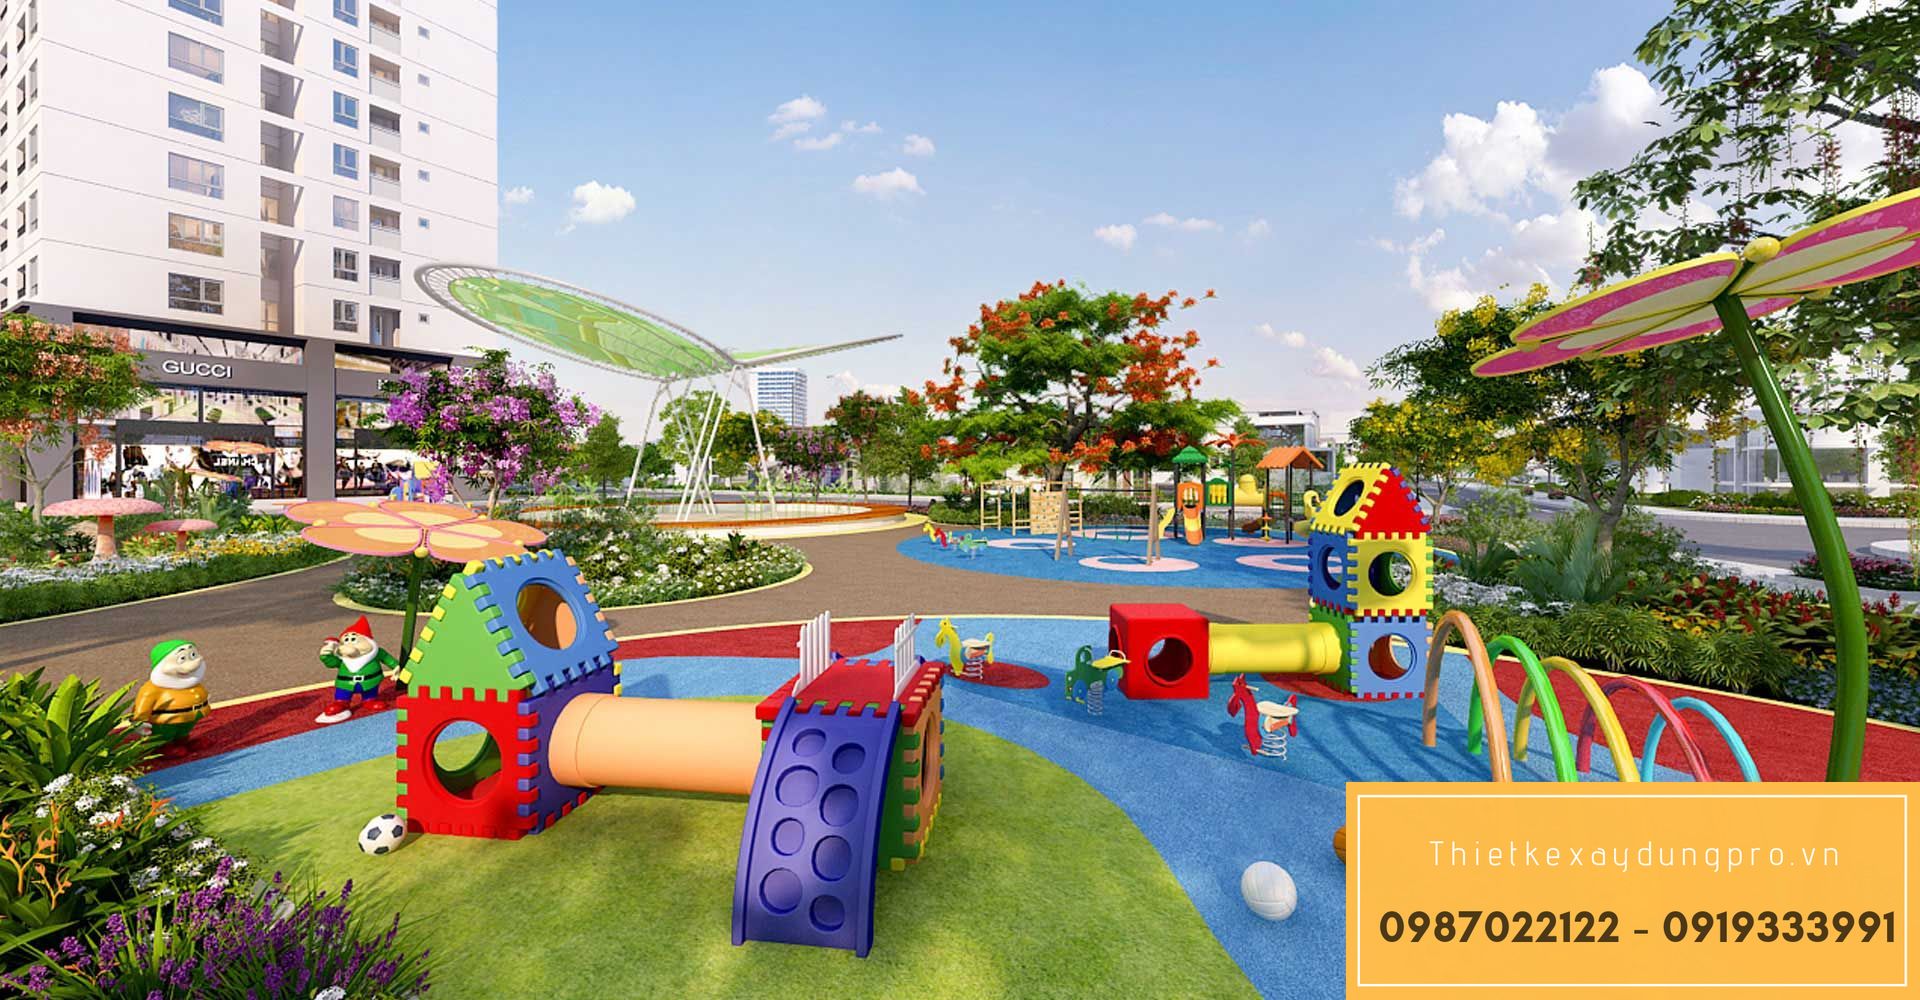 Thiết kế khu vui chơi trẻ em tại Phú Thọ